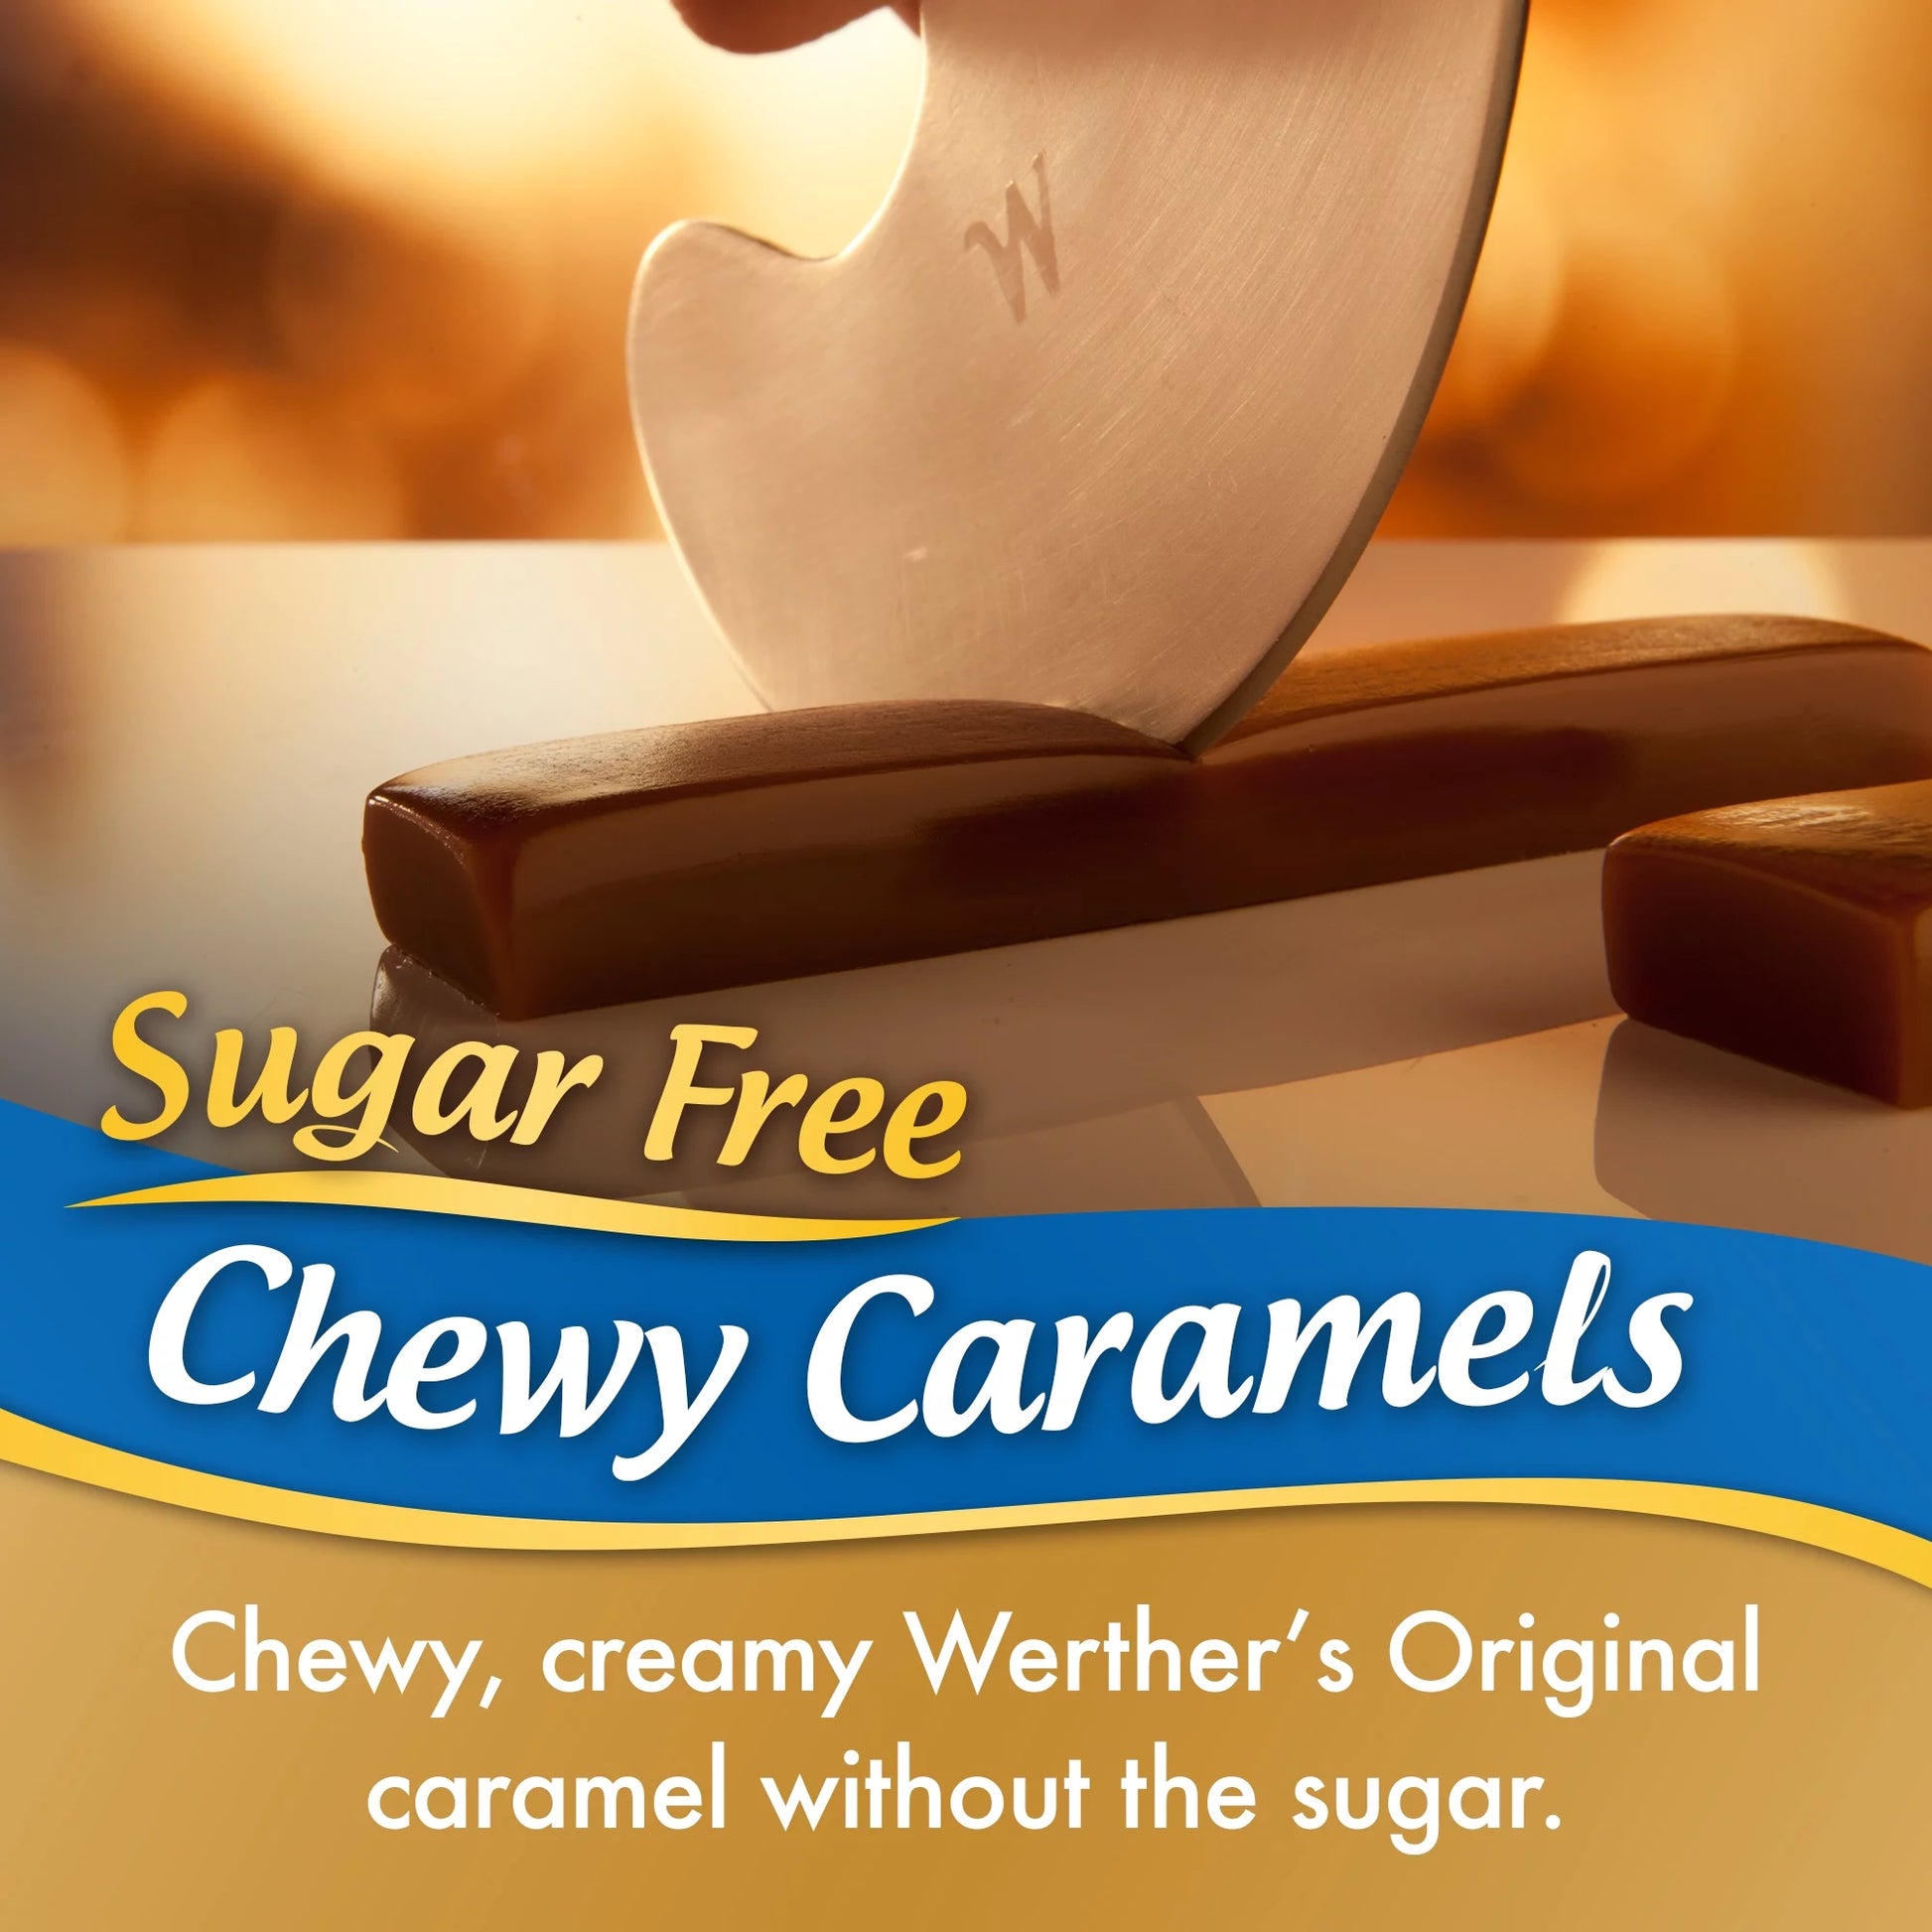 Chewy Sugar Free Caramel Candy 7.7 Oz